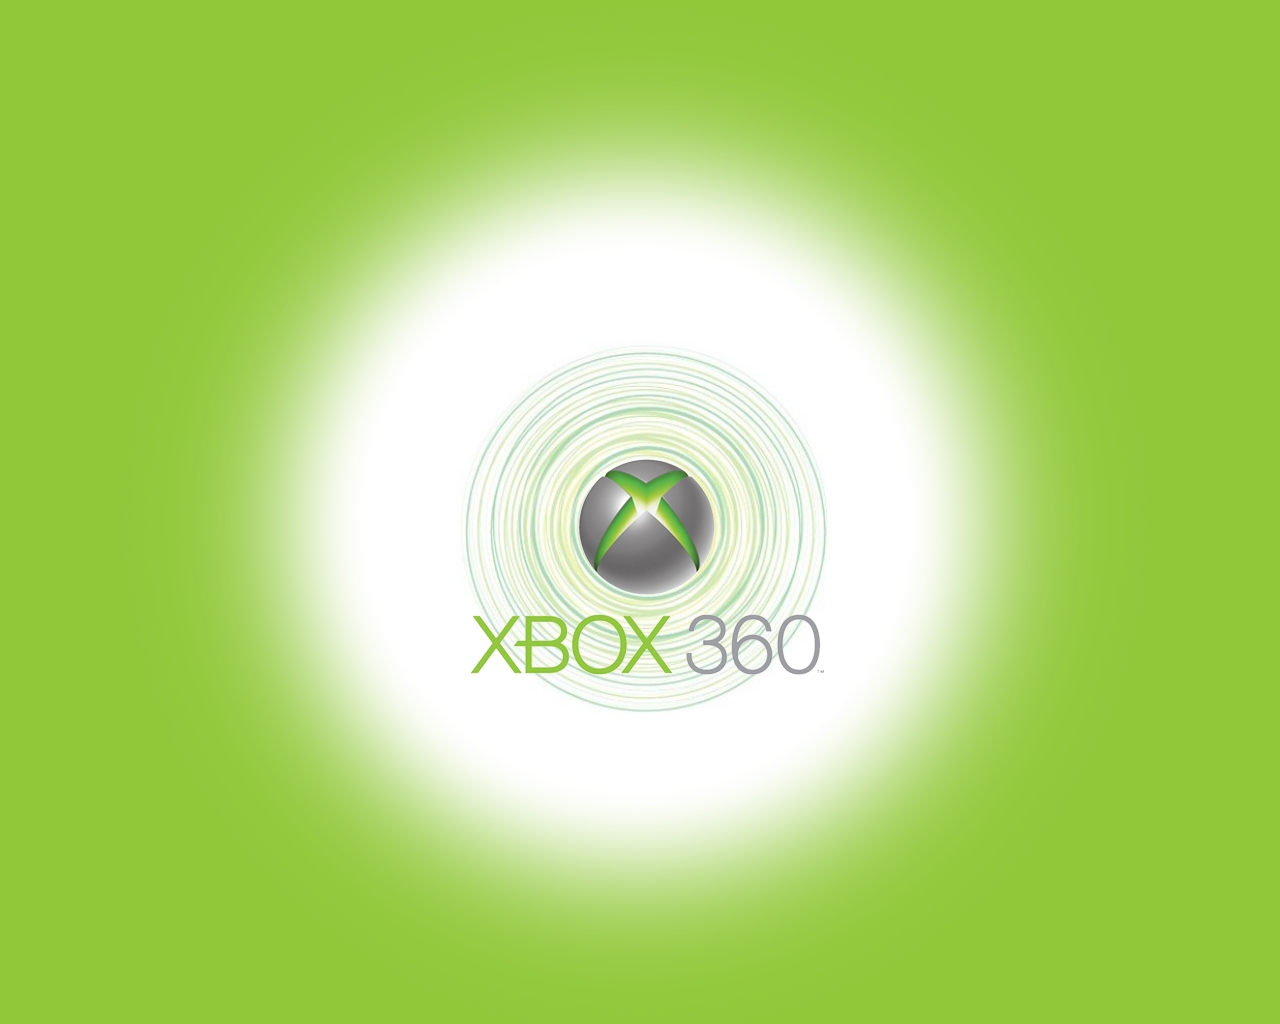 Популярные заставки и фоны Xbox 360 на компьютер